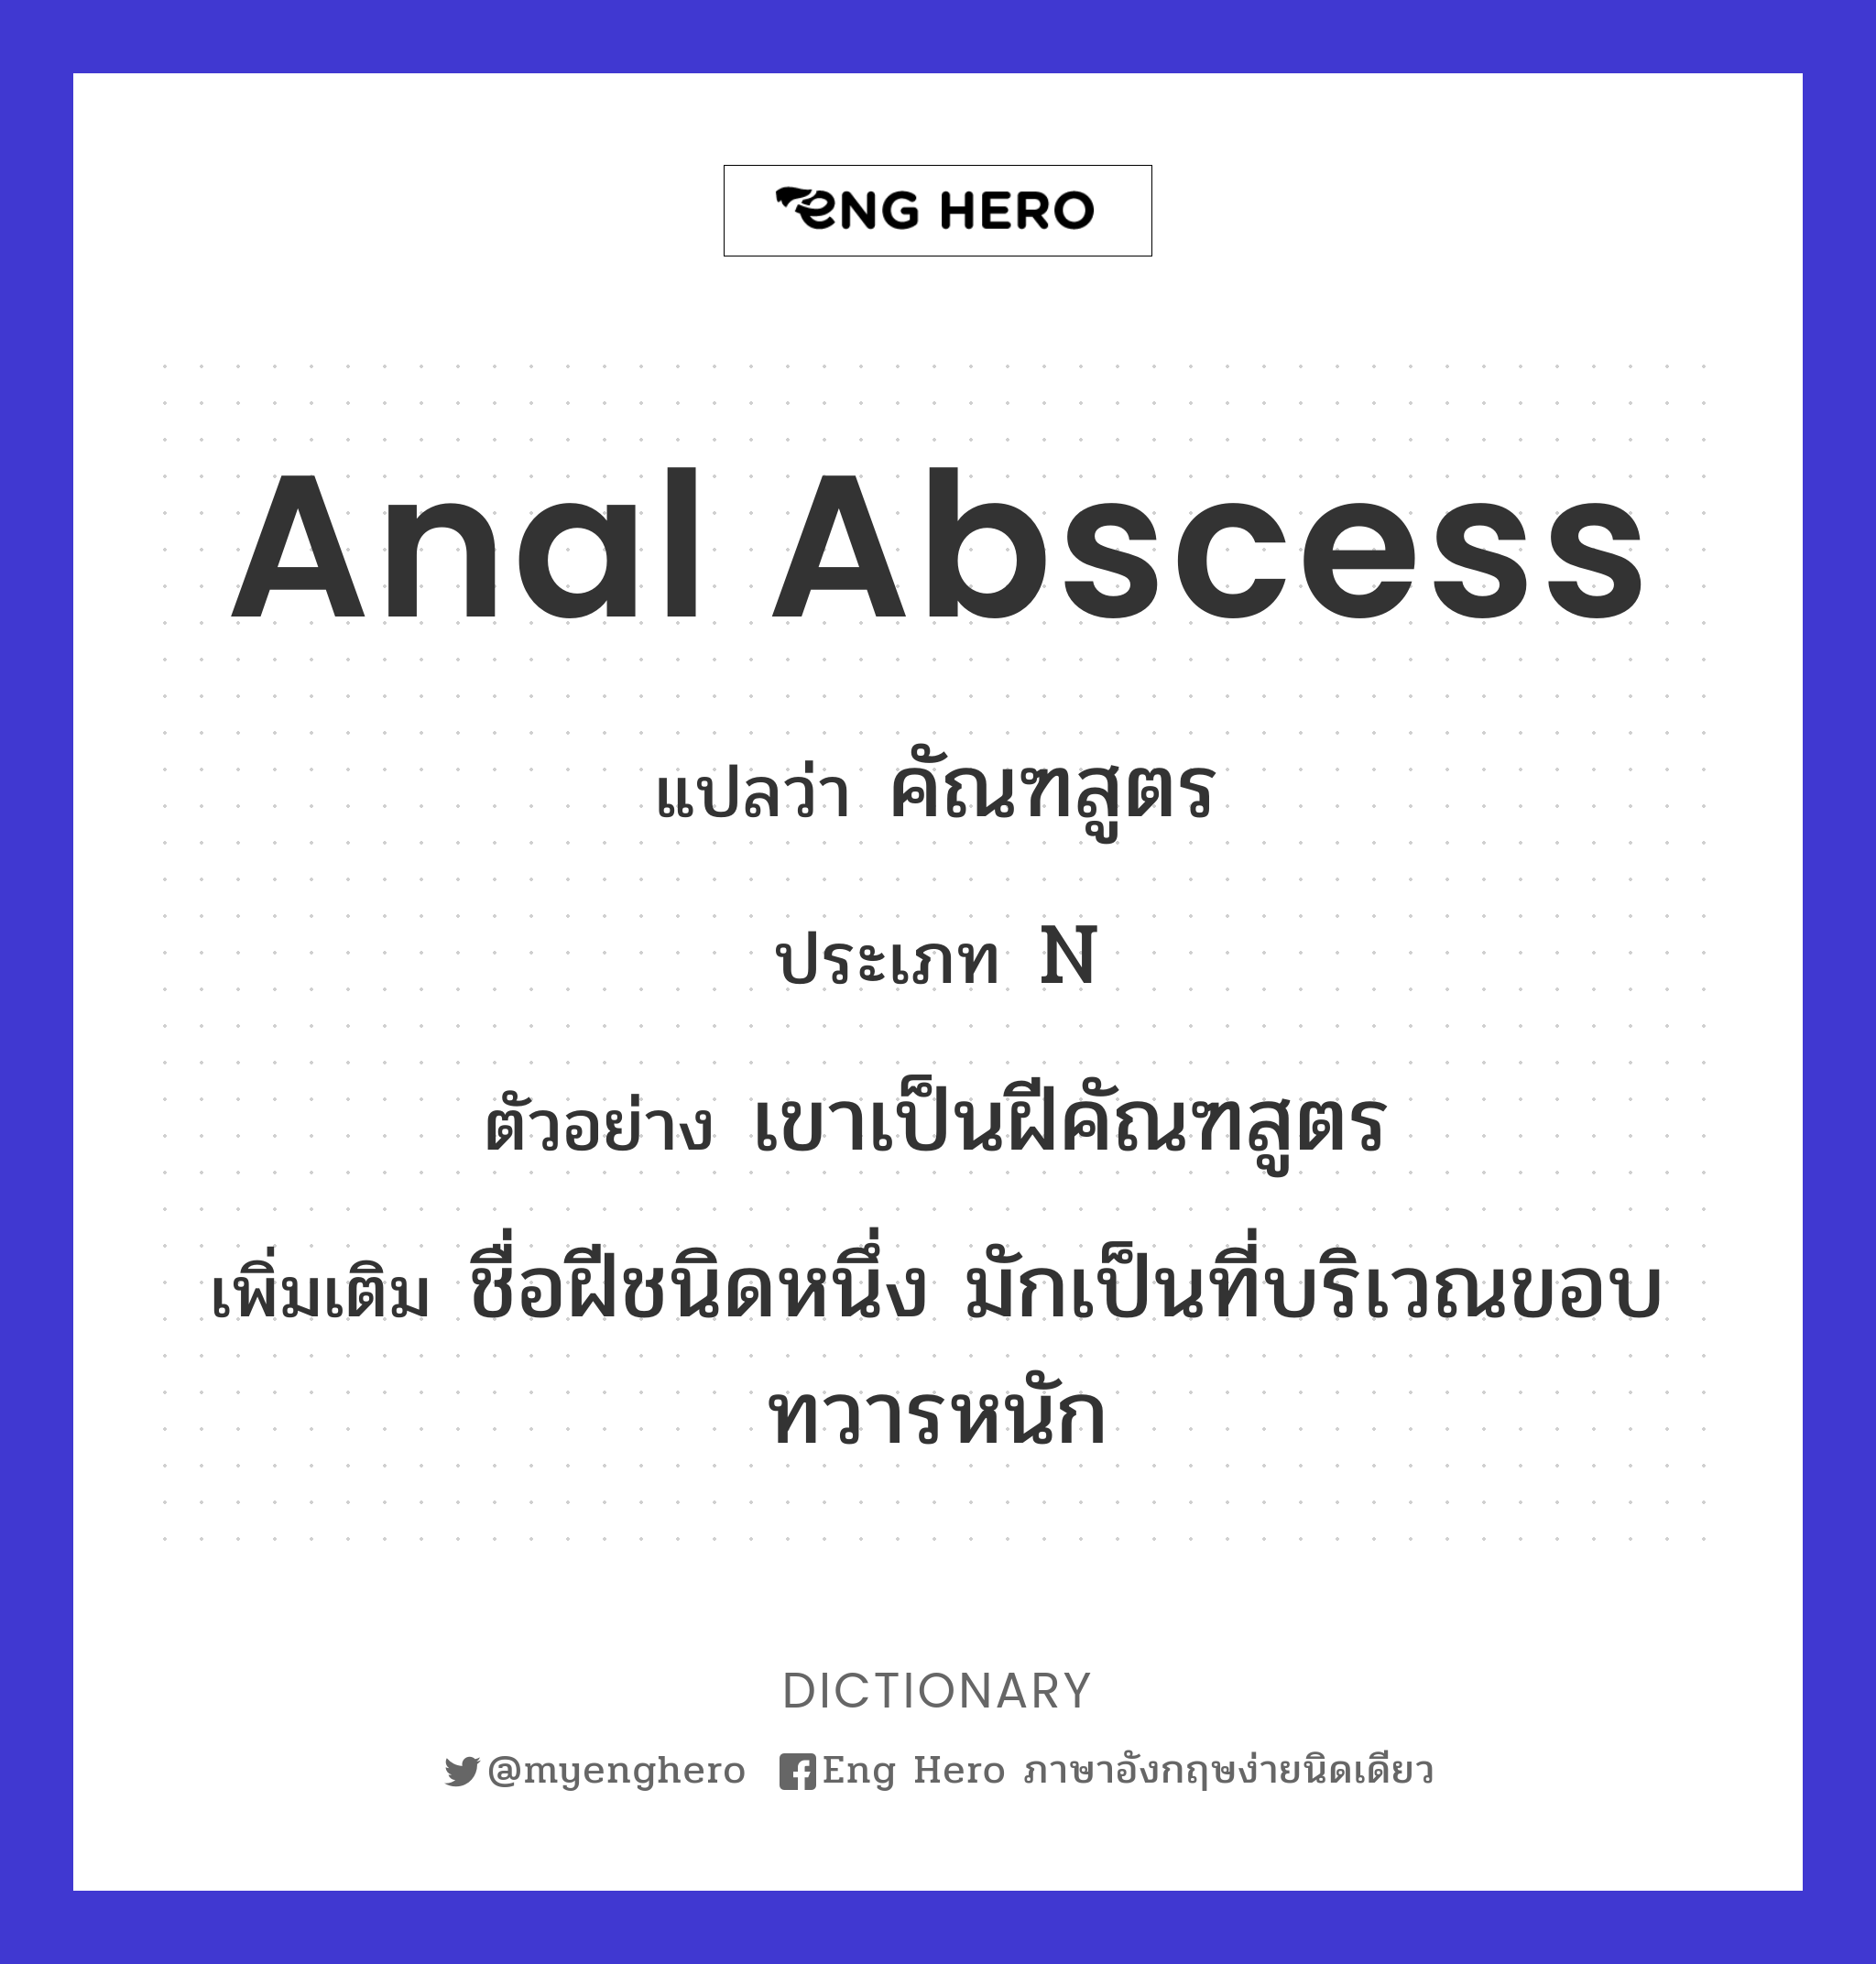 anal abscess